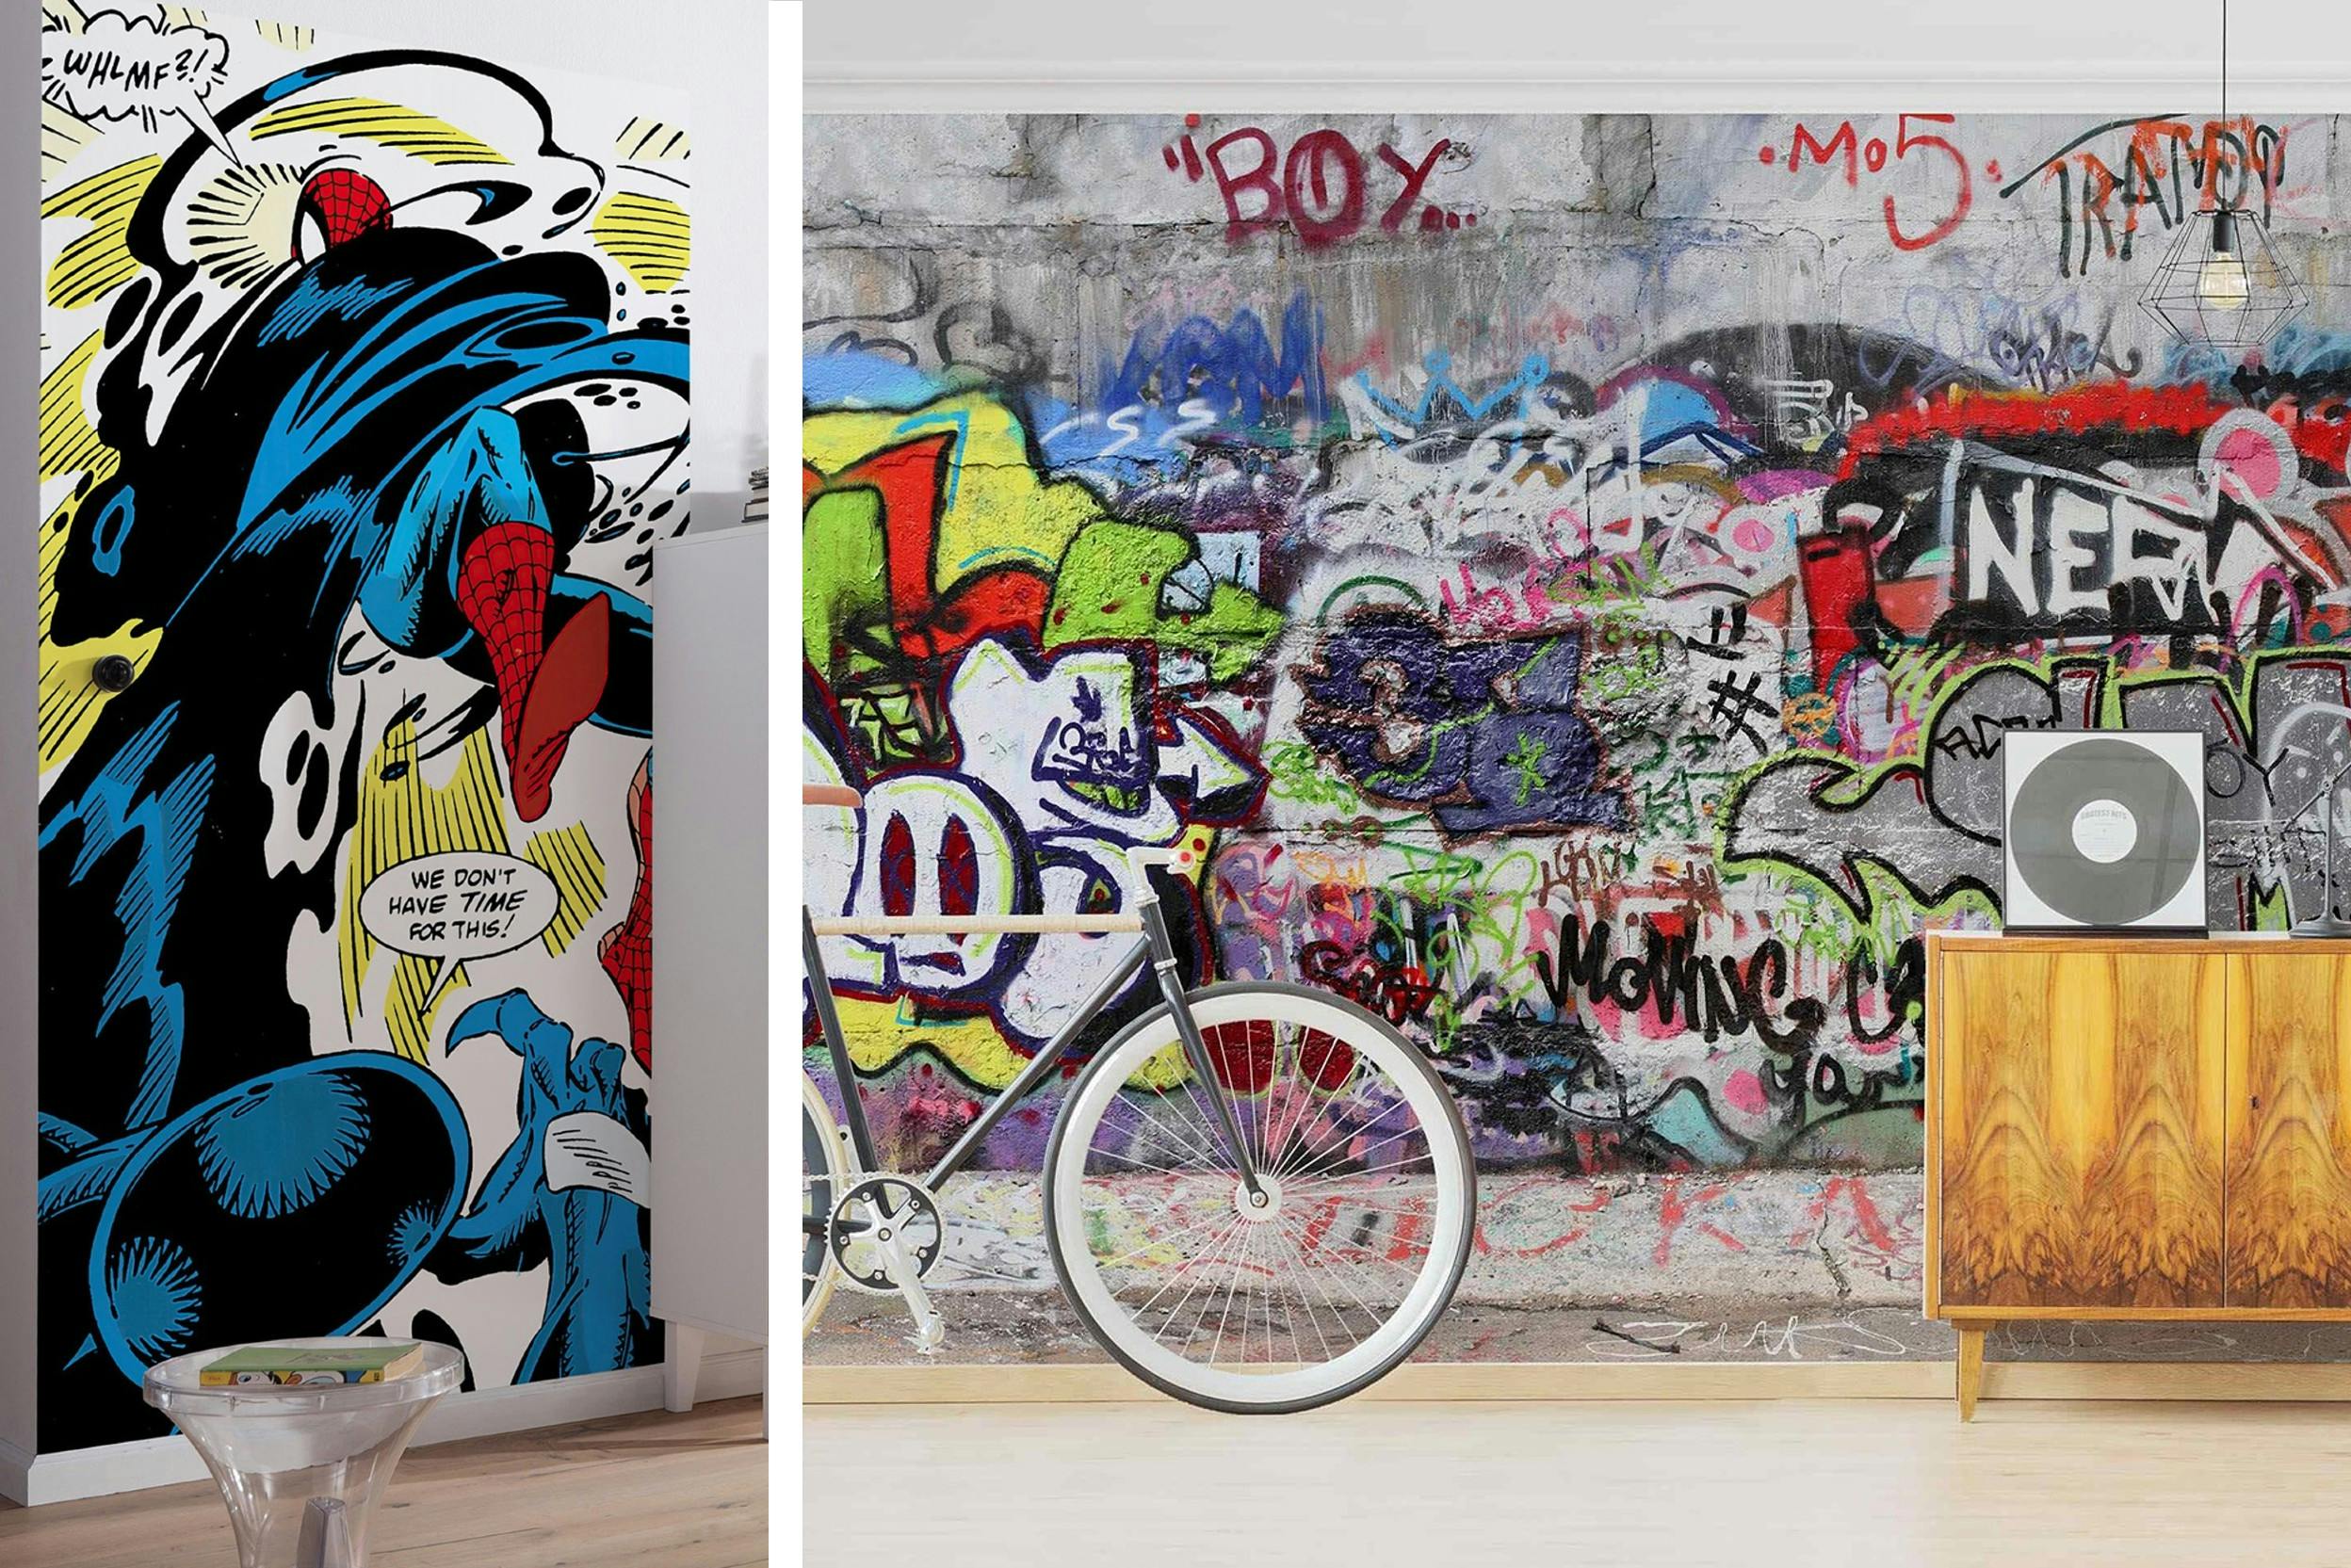 Spiderman-behang. graffitibehang met daarvoor een fiets en houten sideboard